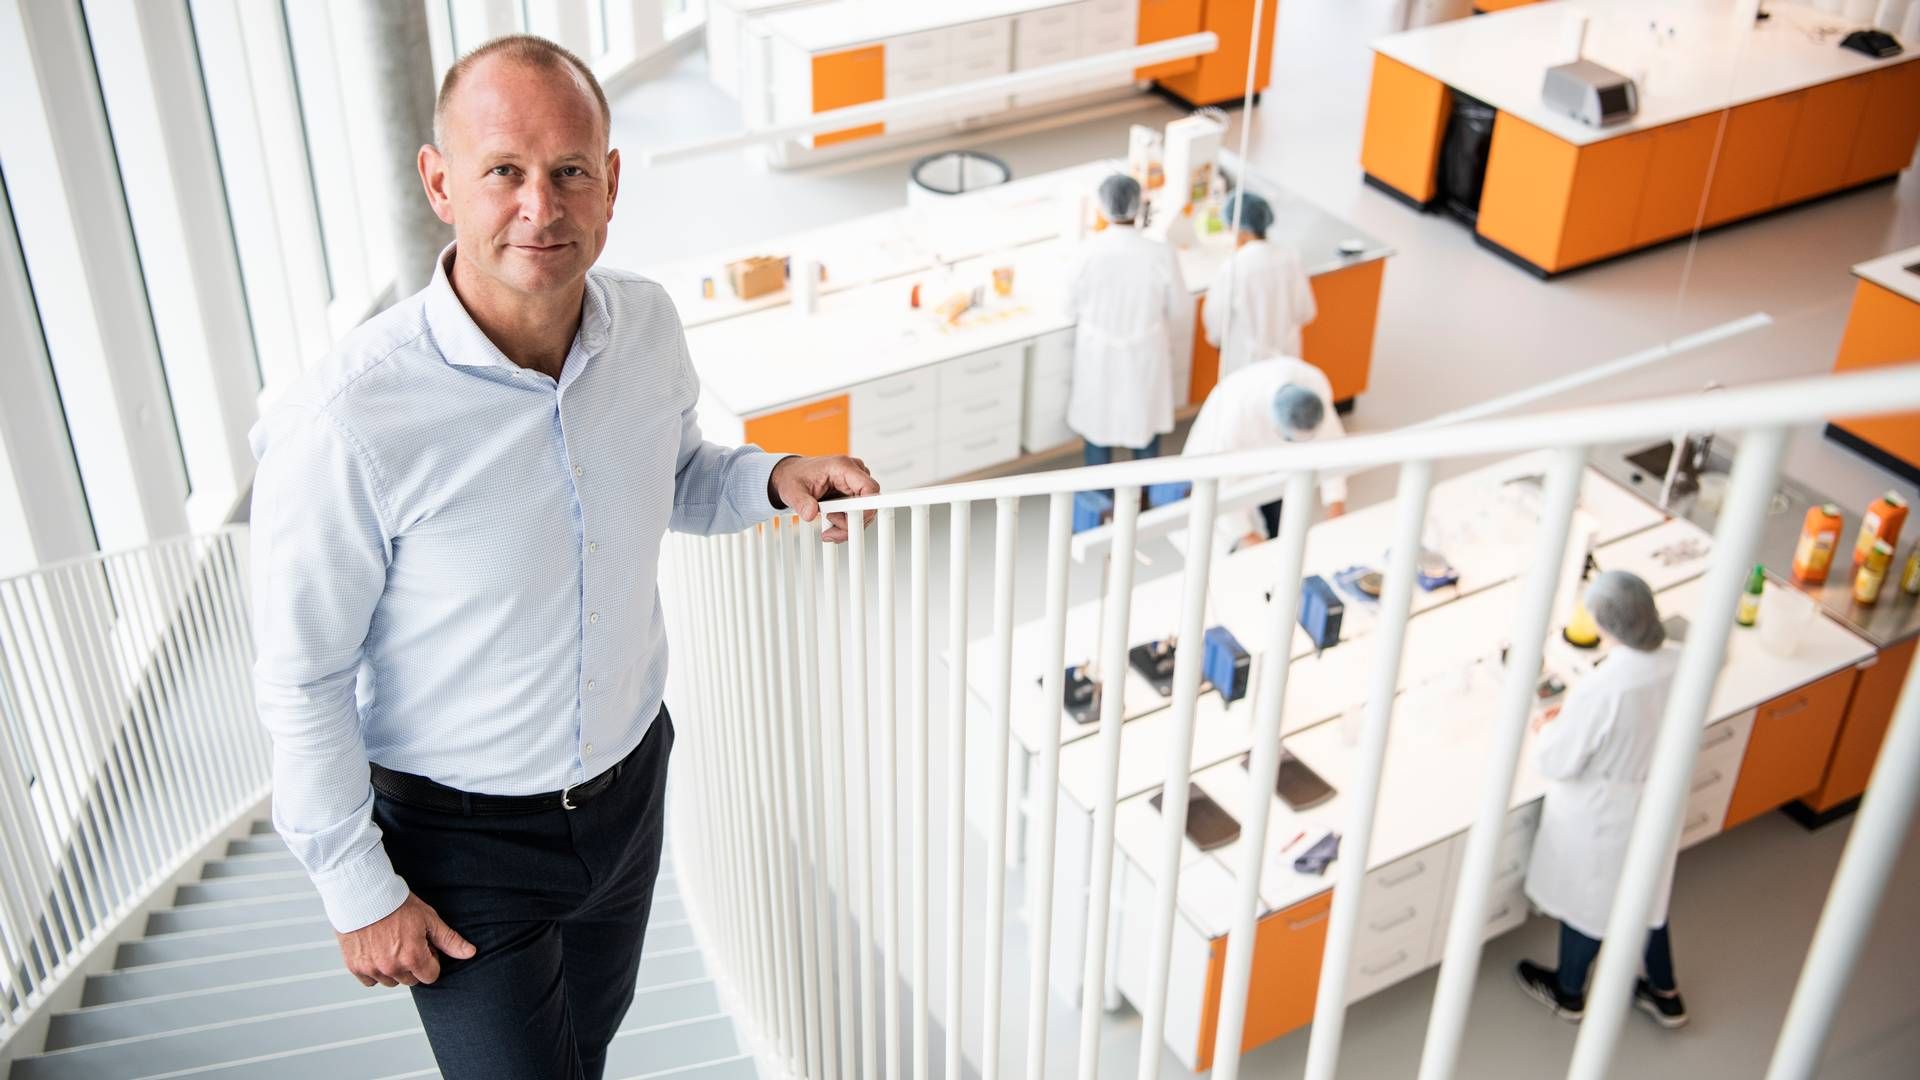 Søren Holm Jensen, adm. direktør i saft- og juicekoncernen Co-Ro, fortæller, at de rekordhøje priser på appelsiner presser forretningen til at tænke andre veje. | Foto: Gregers Tycho